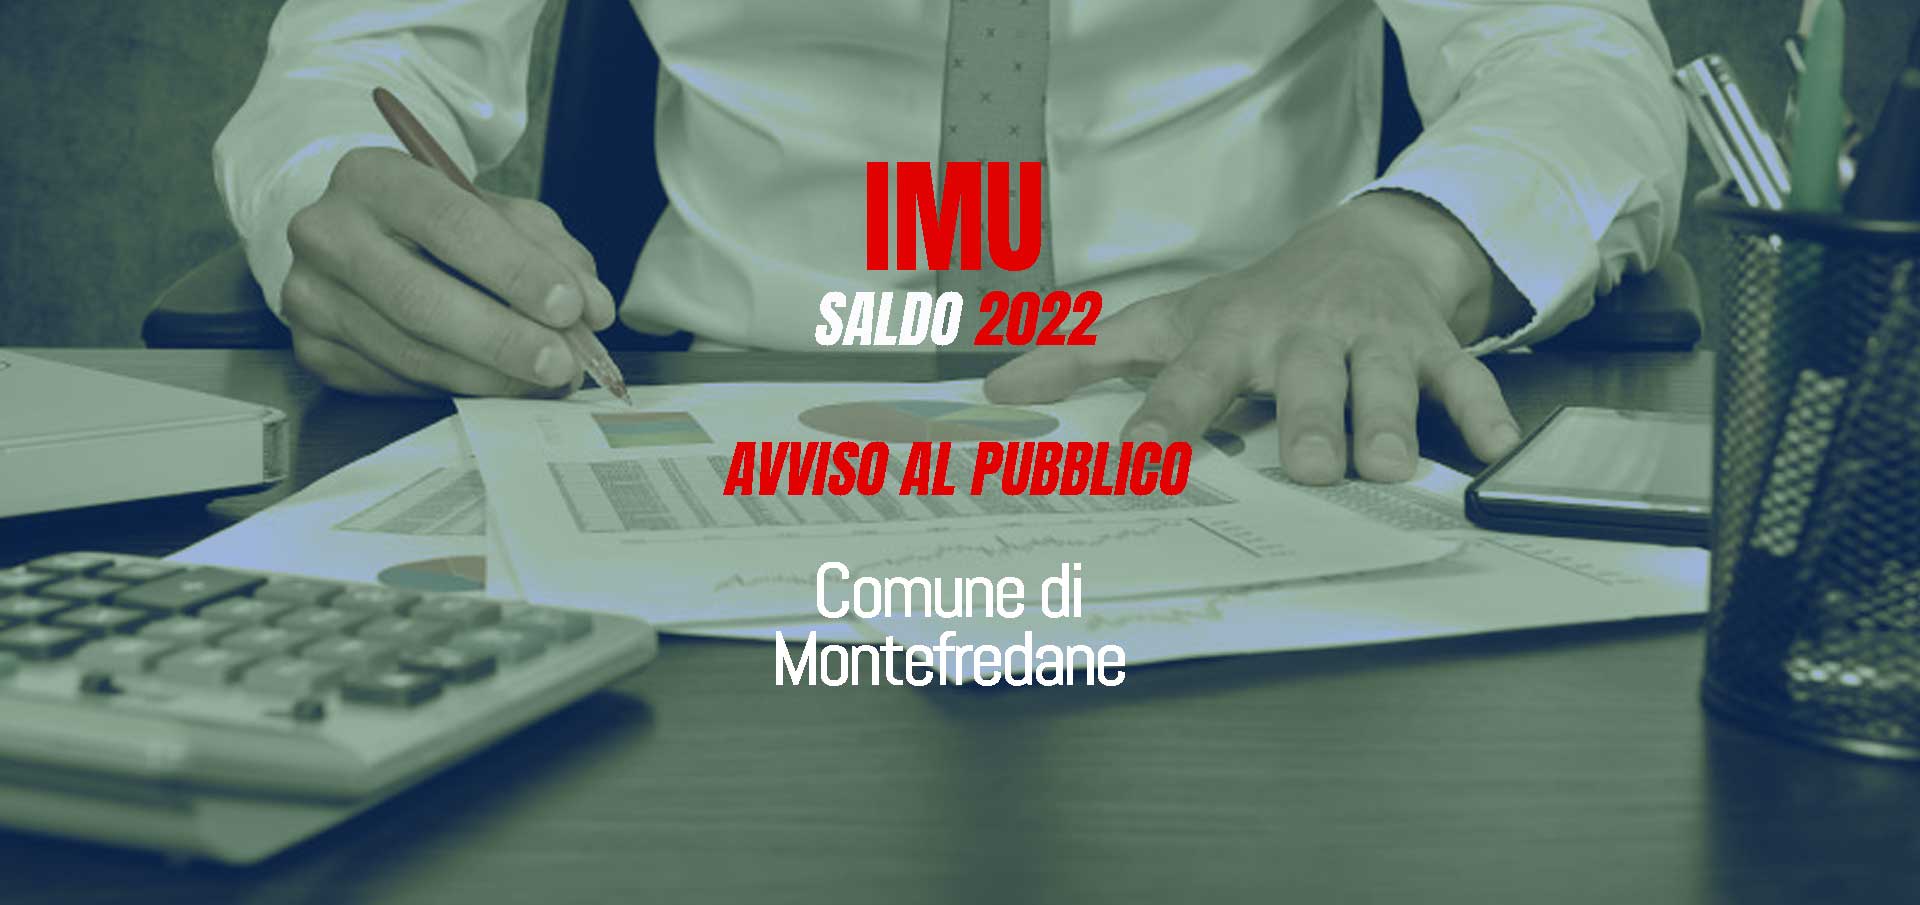 IMU 2022 – SALDO - Comune di Montefredane